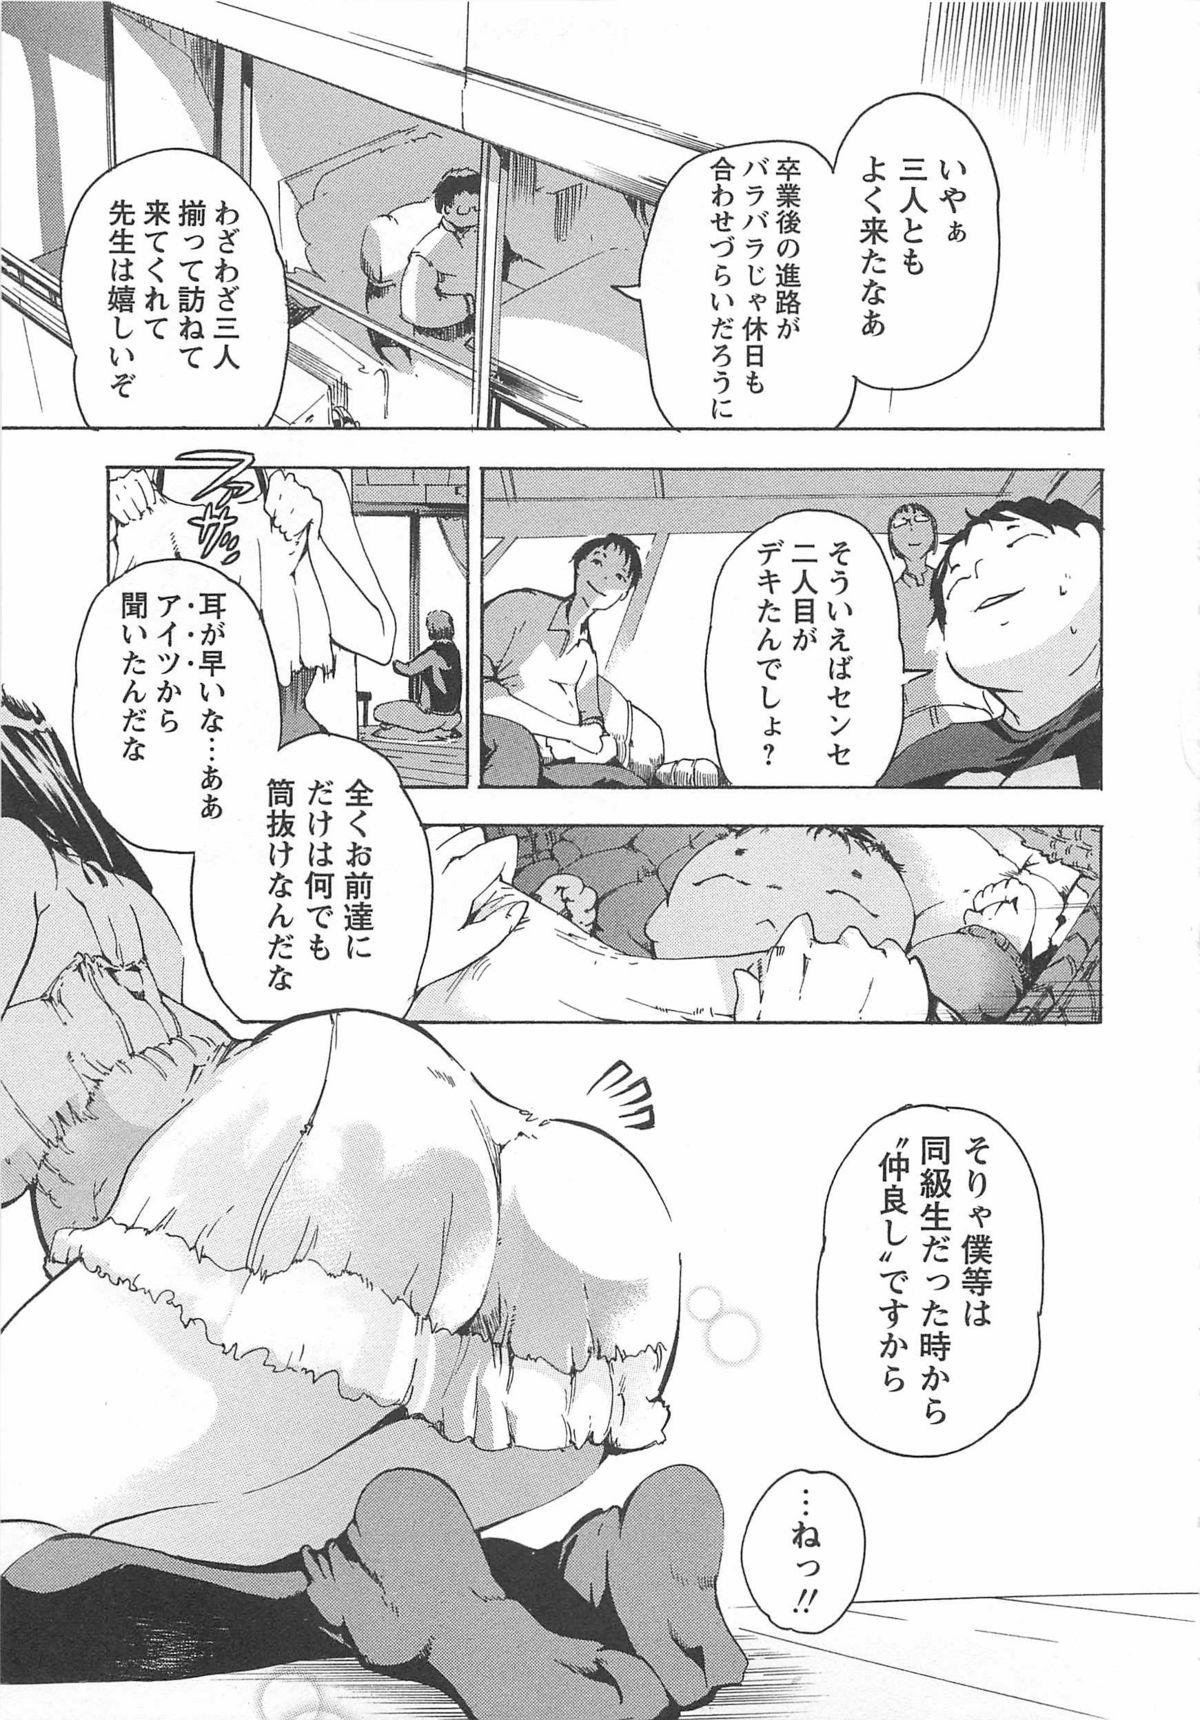 [Densuke] Honey Spot page 44 full